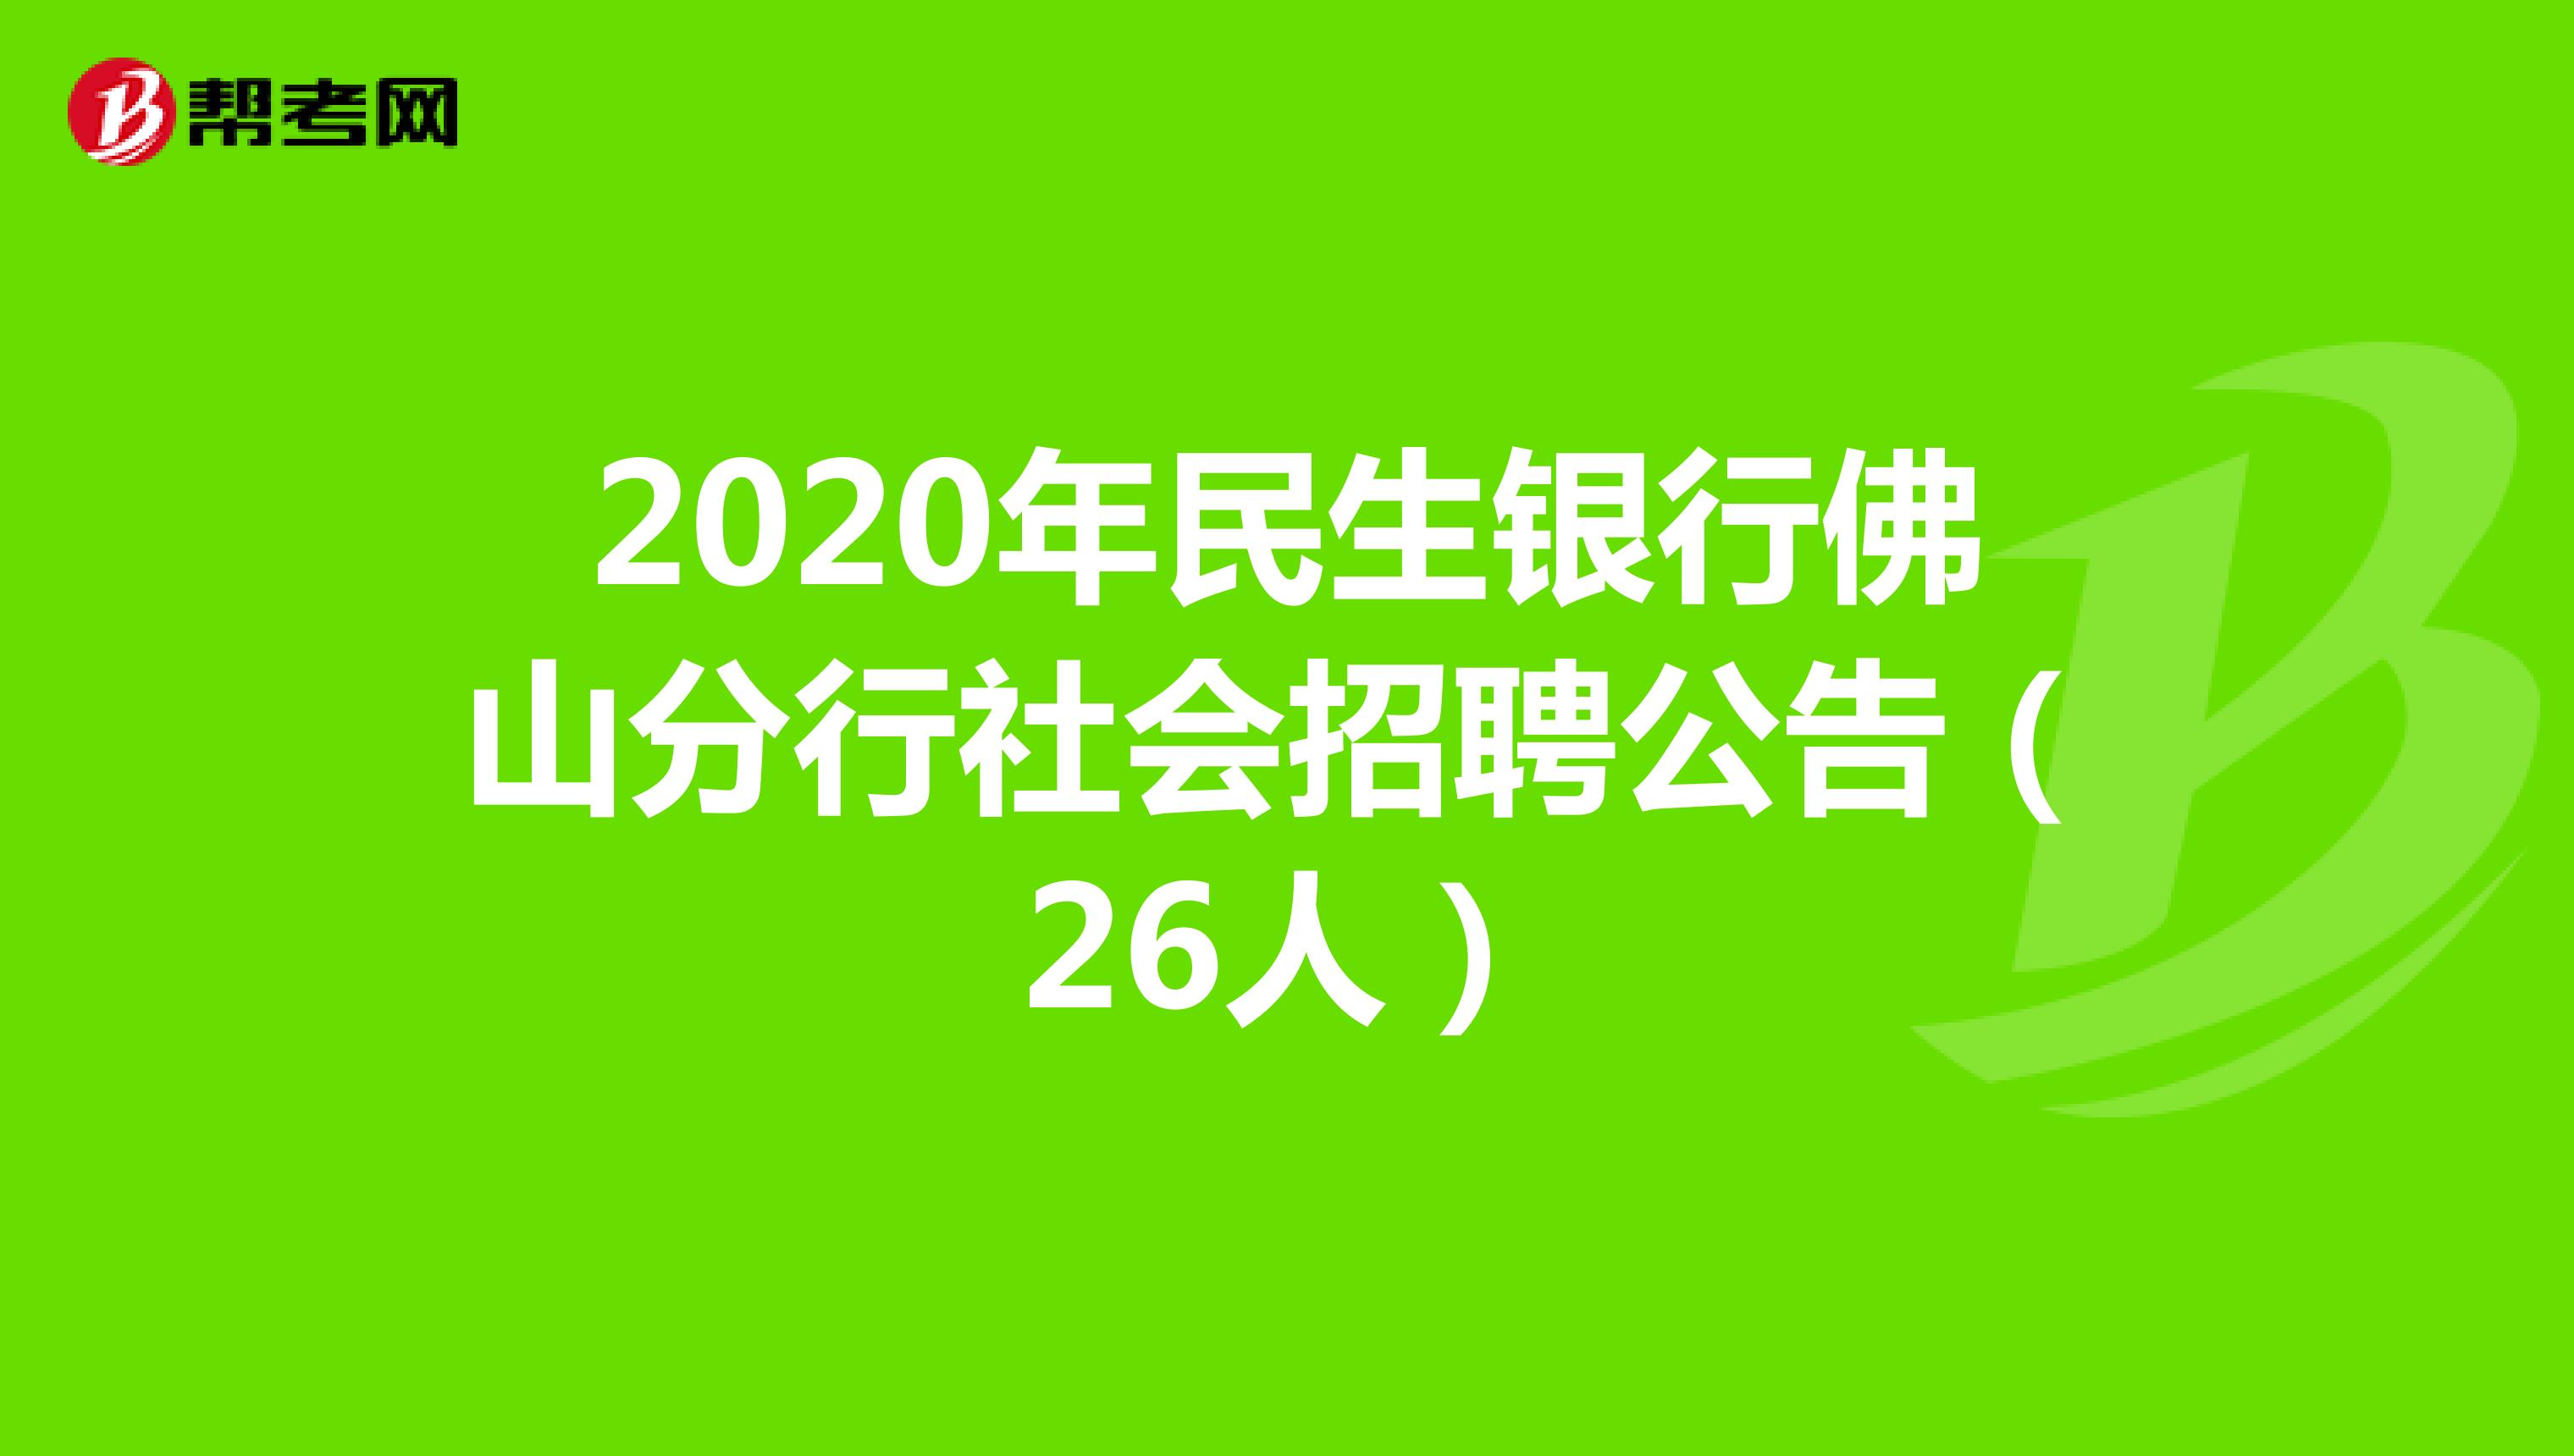 2020年民生银行佛山分行社会招聘公告（26人）